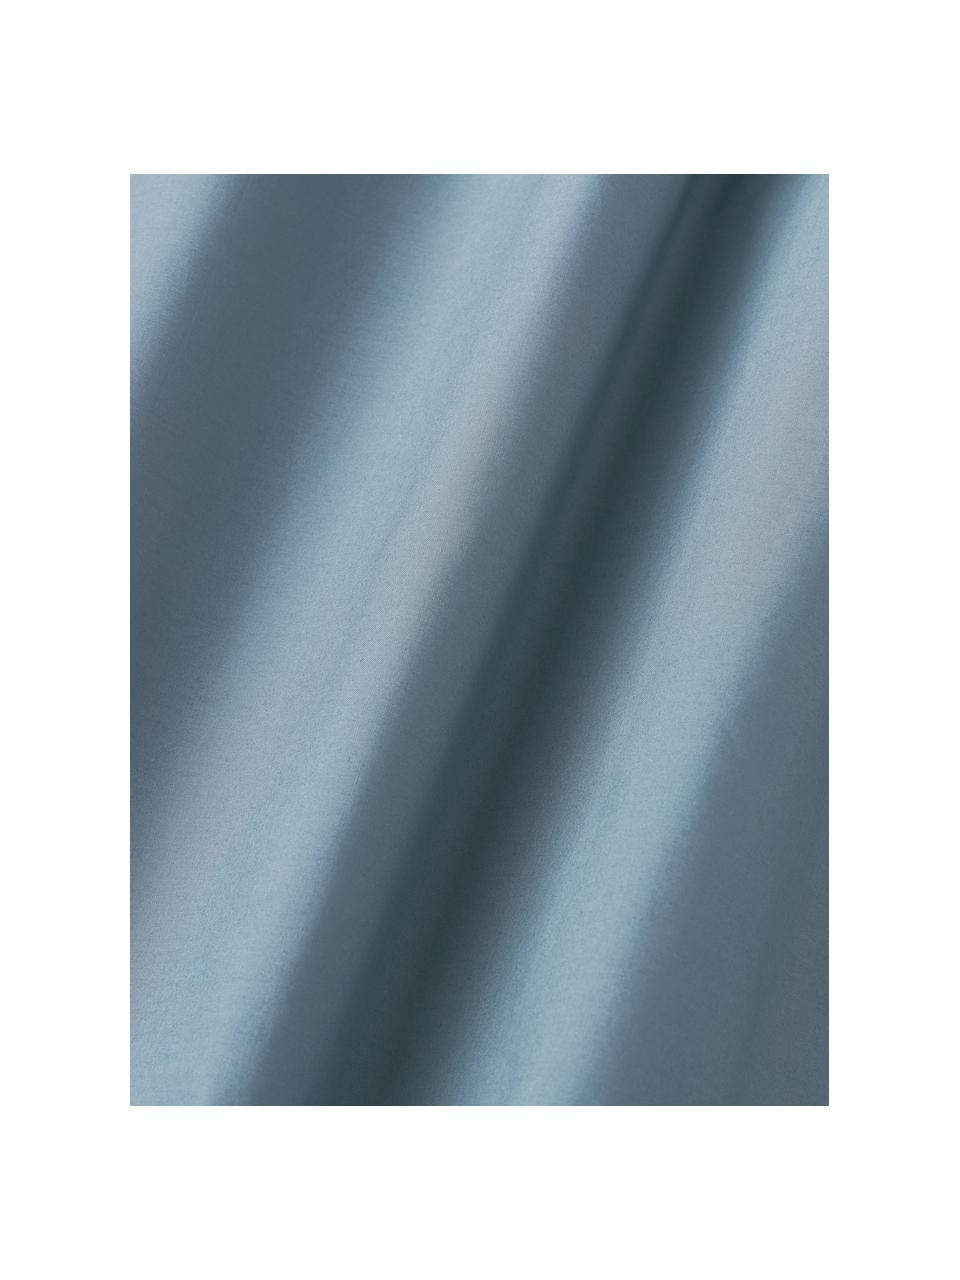 Sábana bajera de percal Elsie, Gris azulado, Cama 90 cm (90 x 200 x 35 cm)